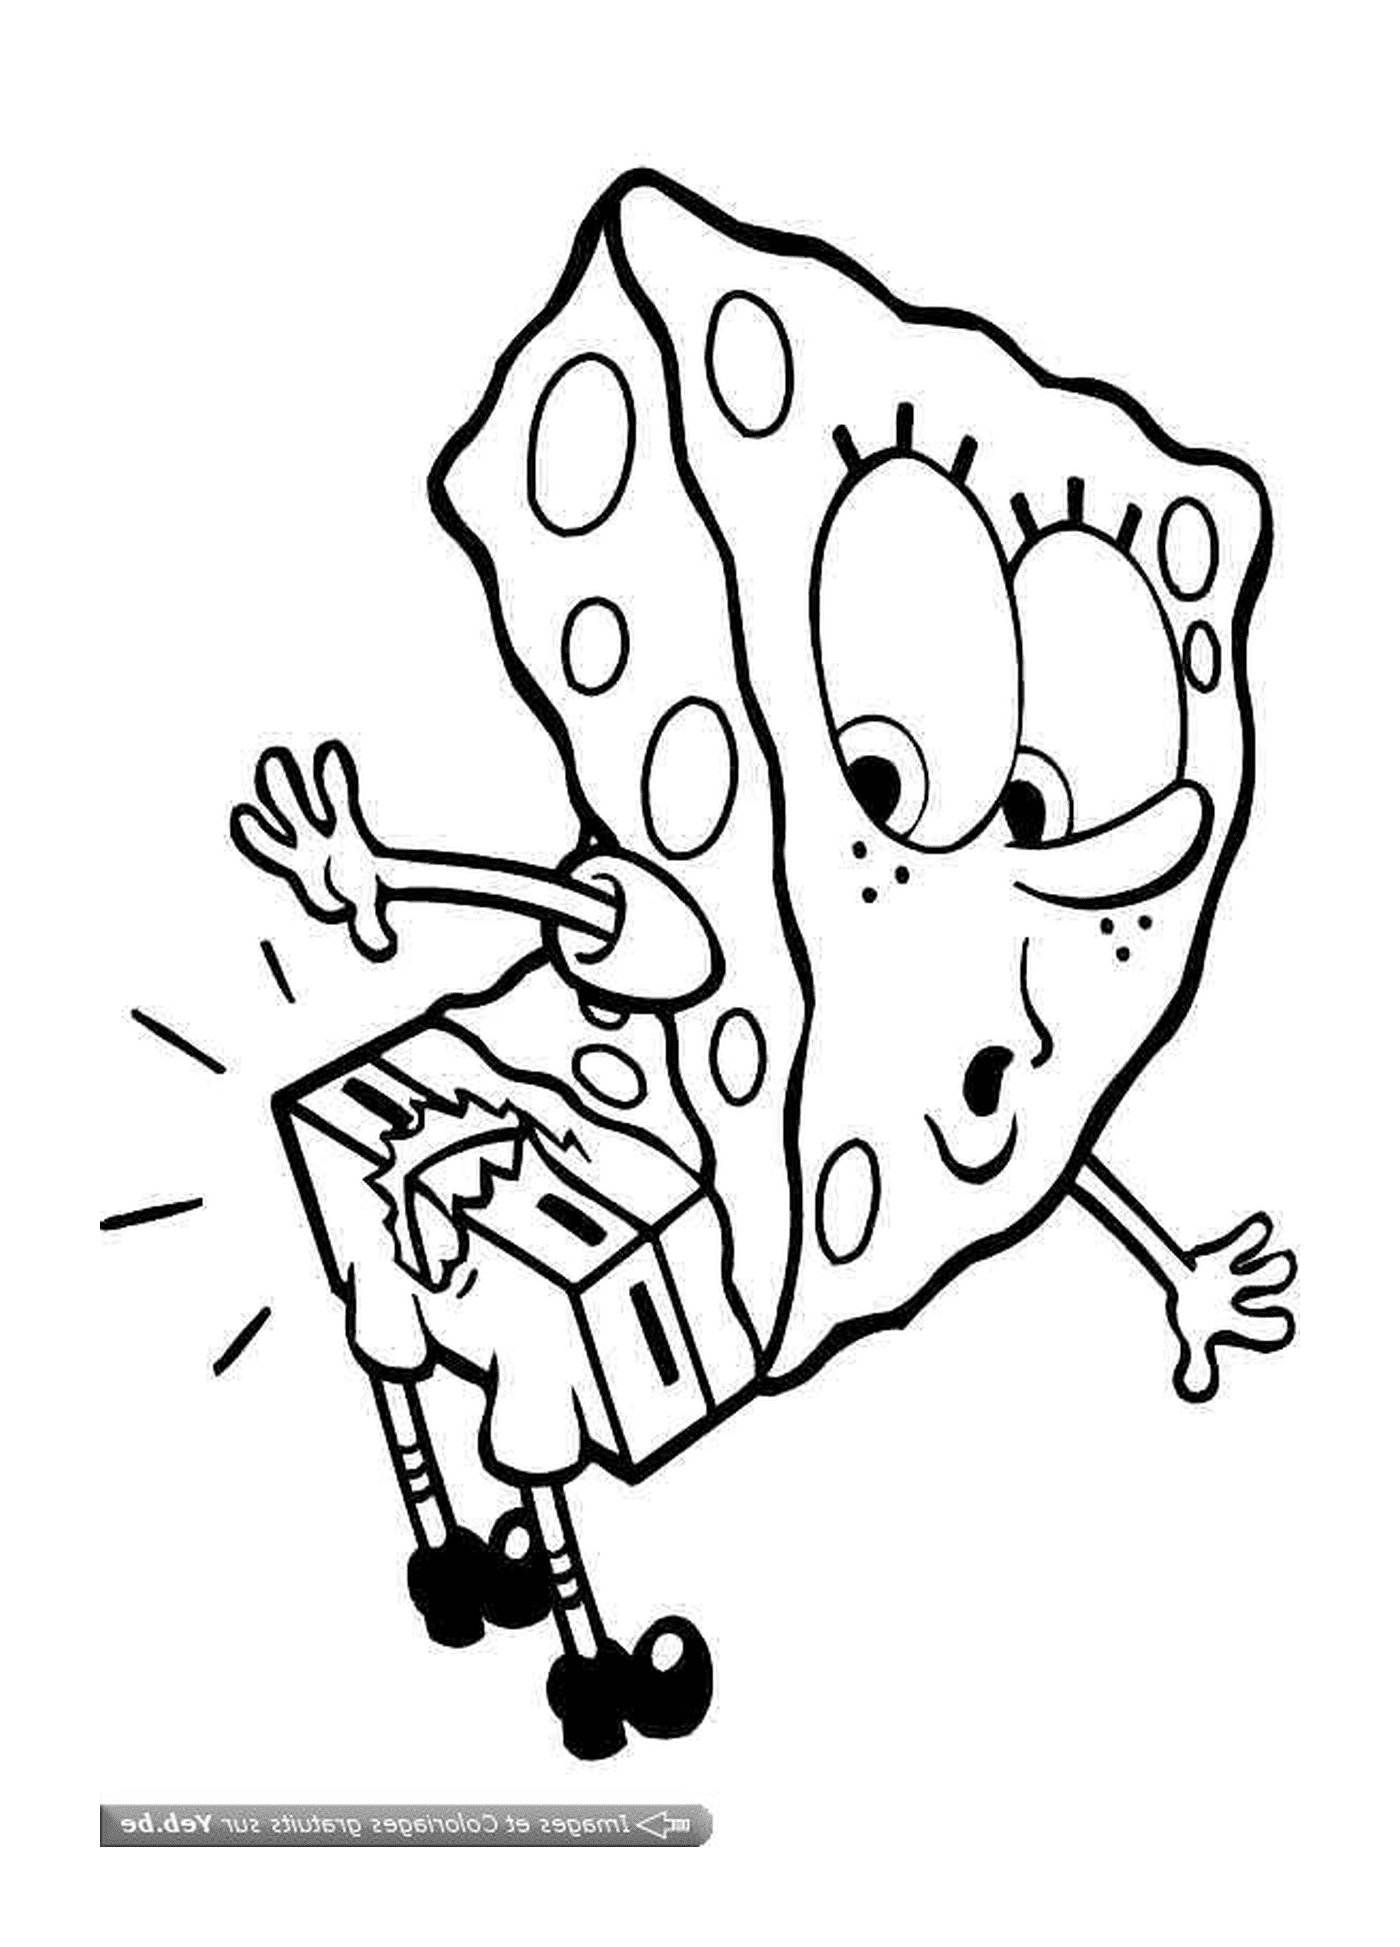  Ein Sponge Bob, der einen Karton hält 